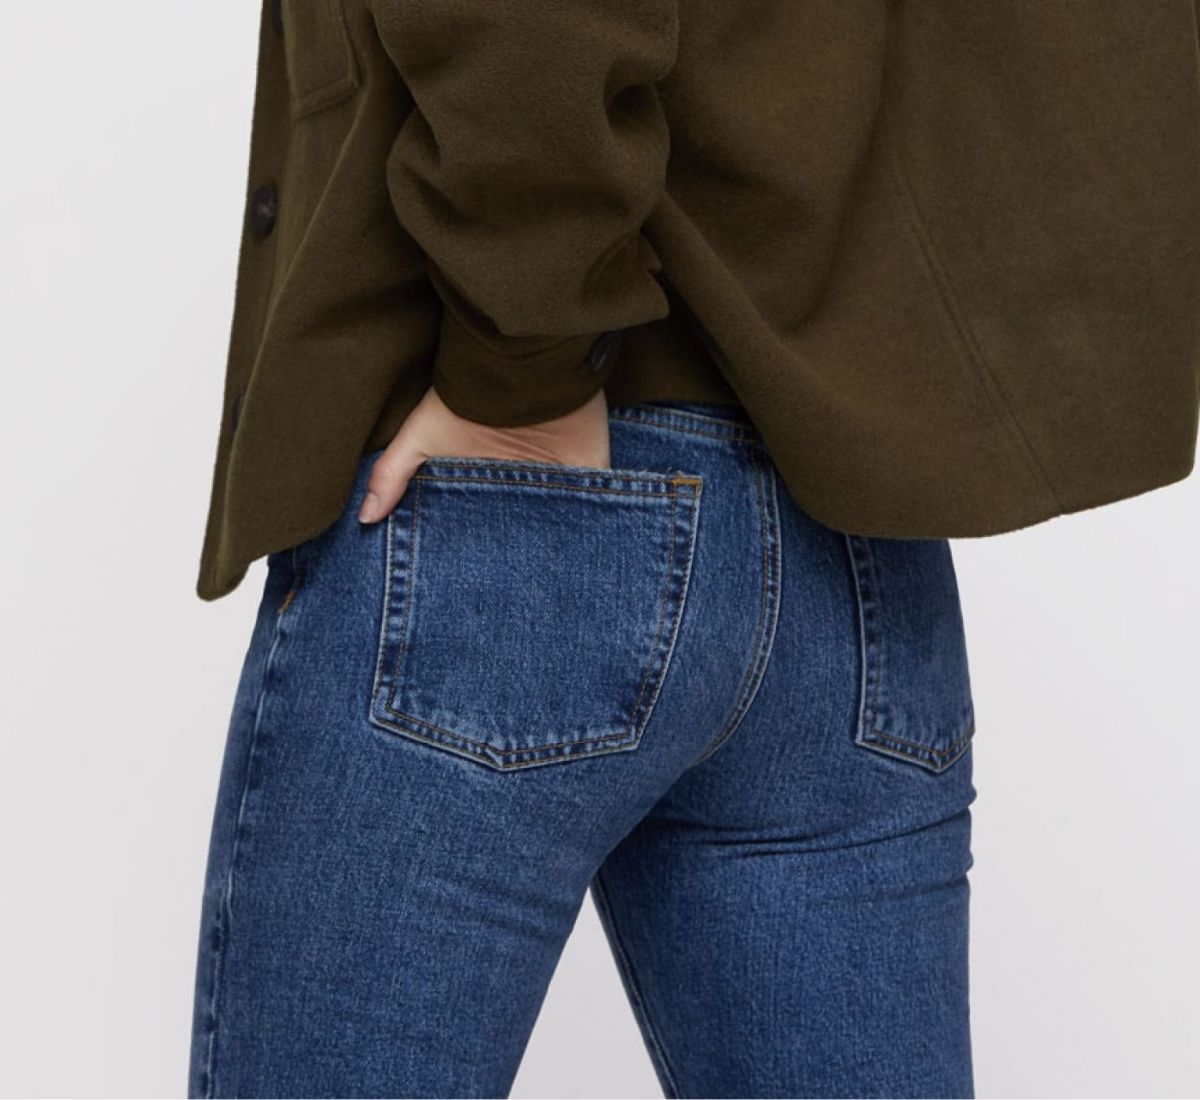 Jeans: come trovare la tua dolce metà